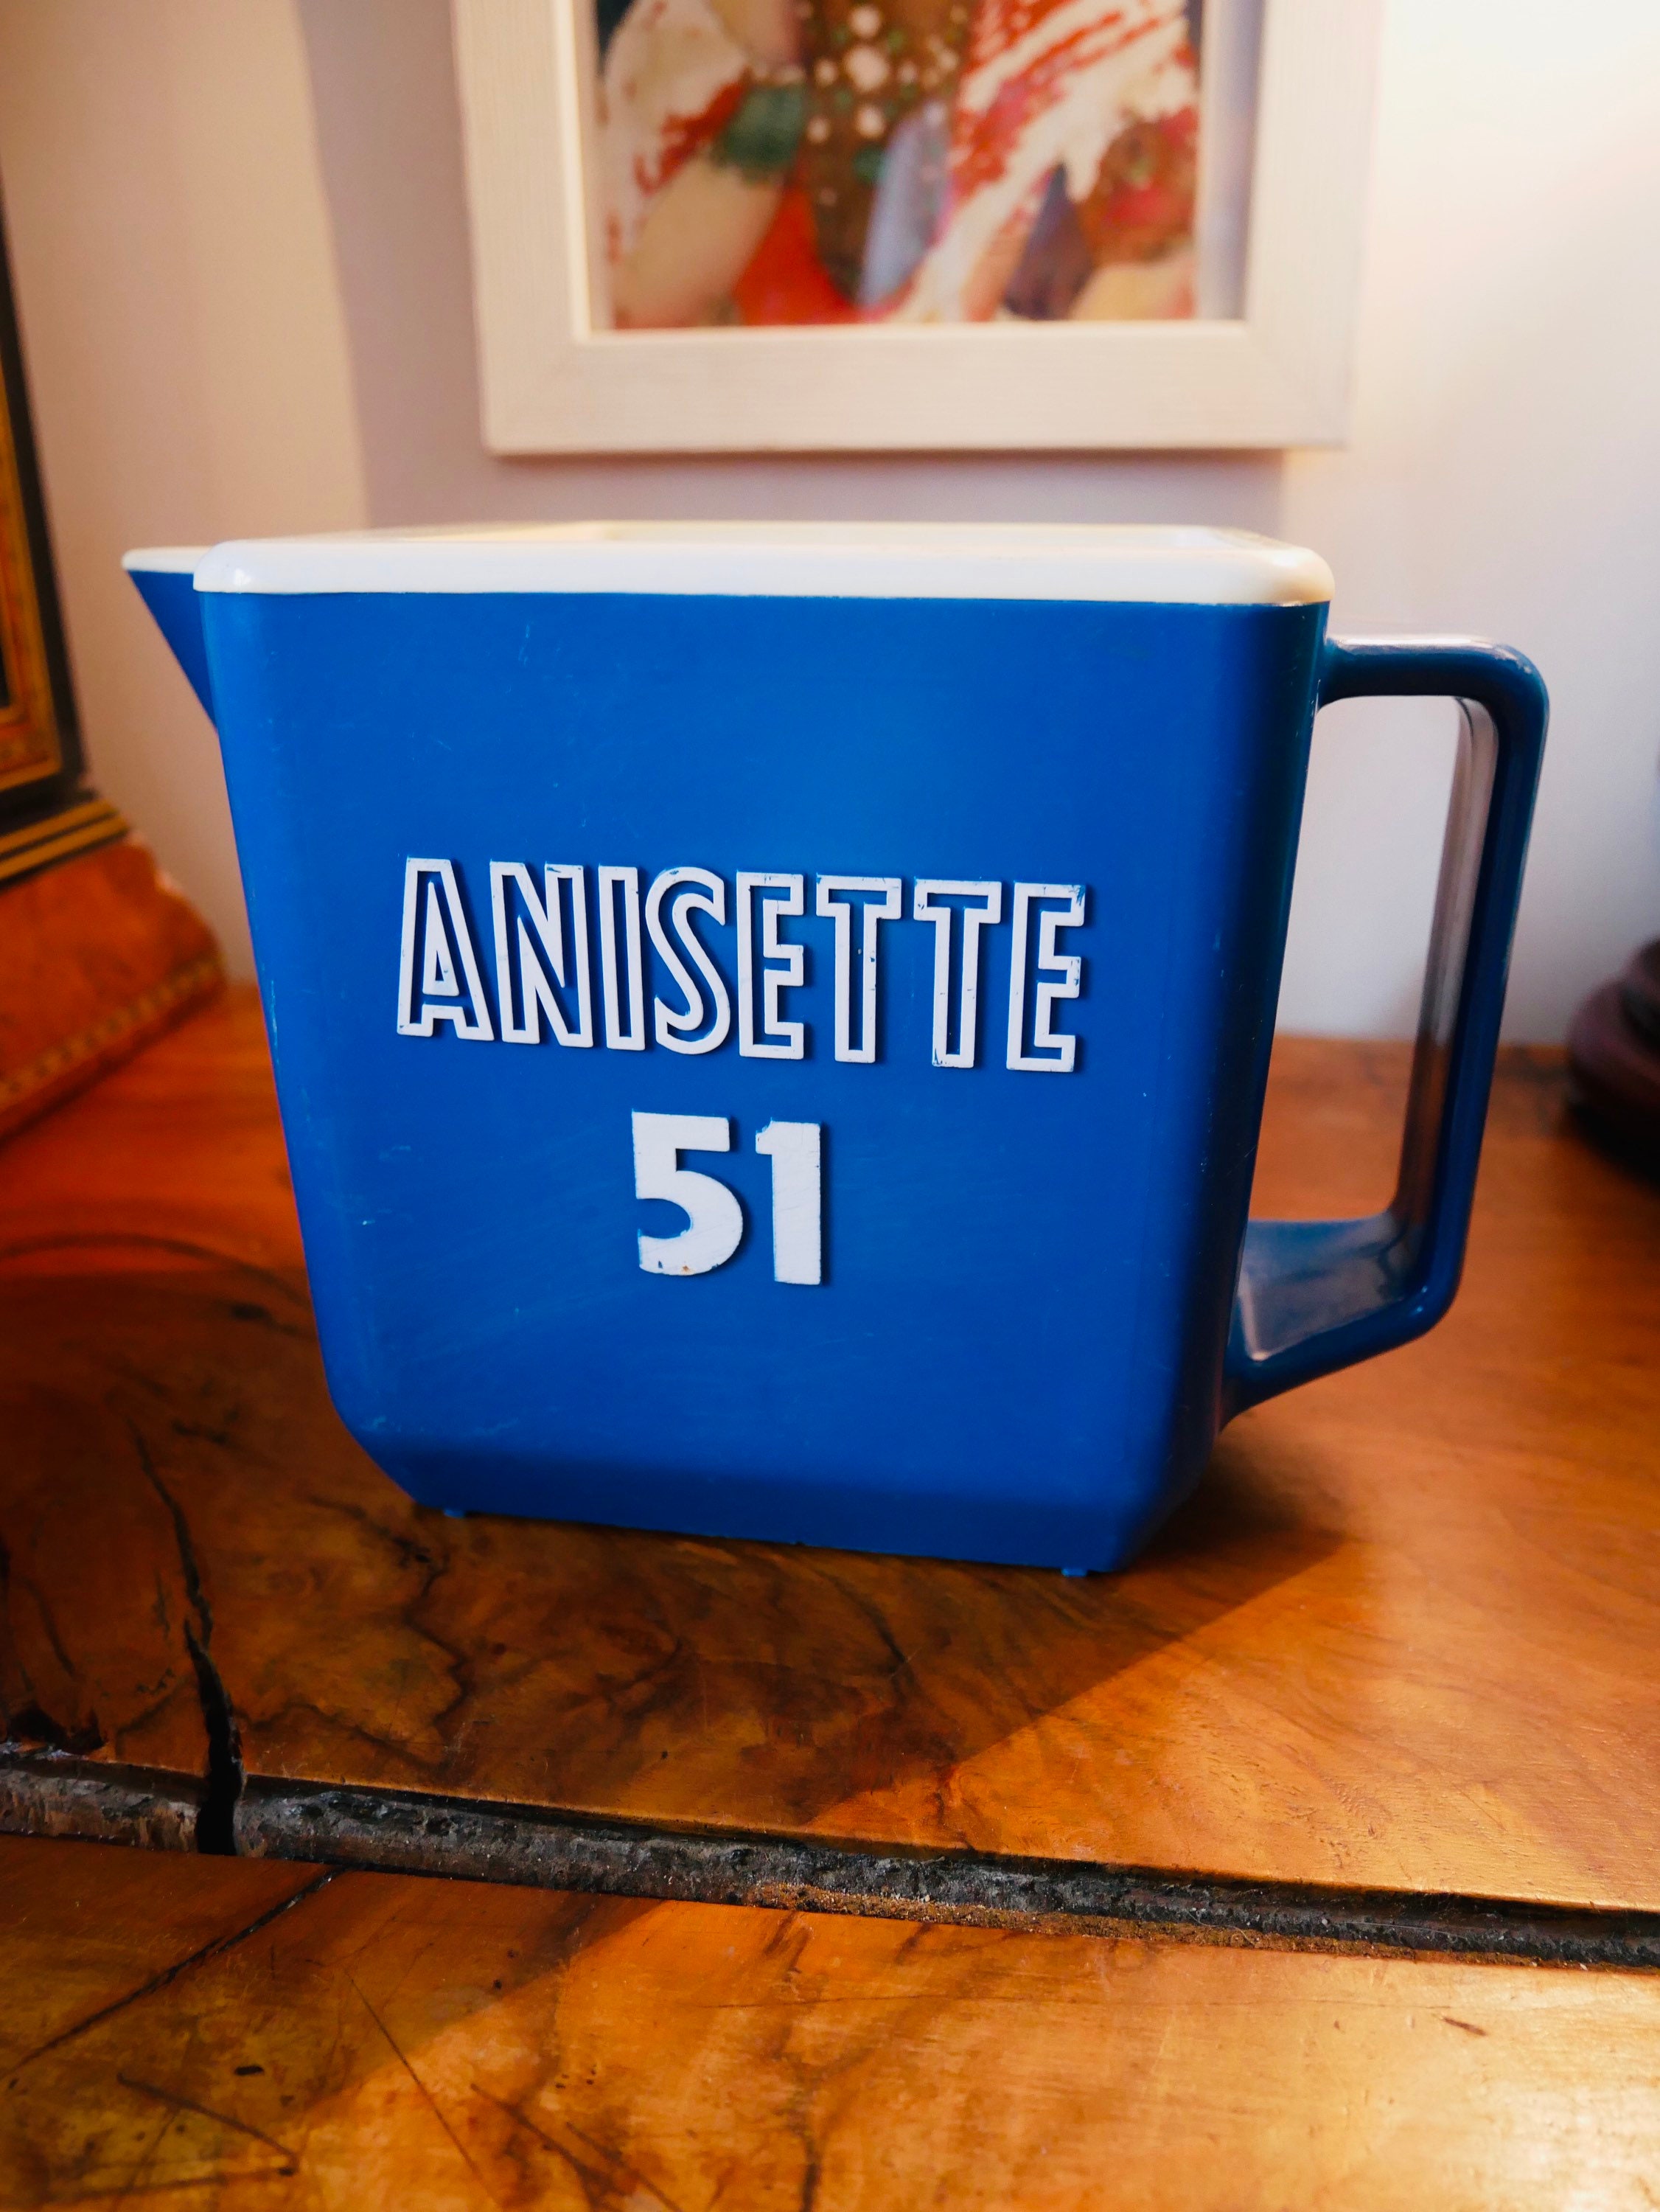 Pichet en Plastique Bleu et Blanc Anisette 51 Marseille